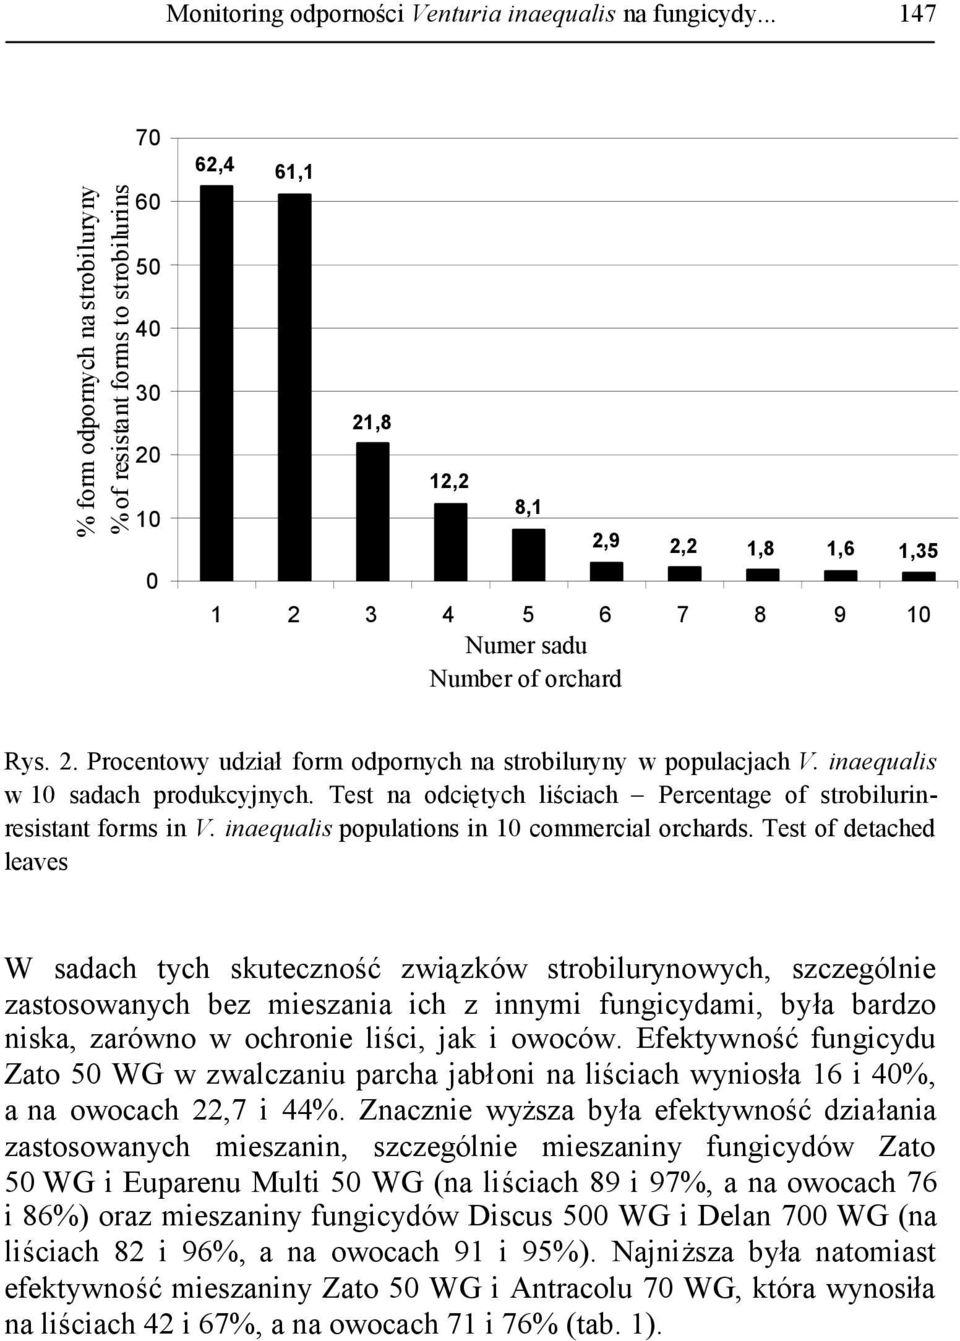 2. Procentowy udziałform odpornych na strobiluryny w populacjach V. inaequalis w 10 sadach produkcyjnych. Test na odciętych liściach Percentage of strobilurinresistant forms in V.